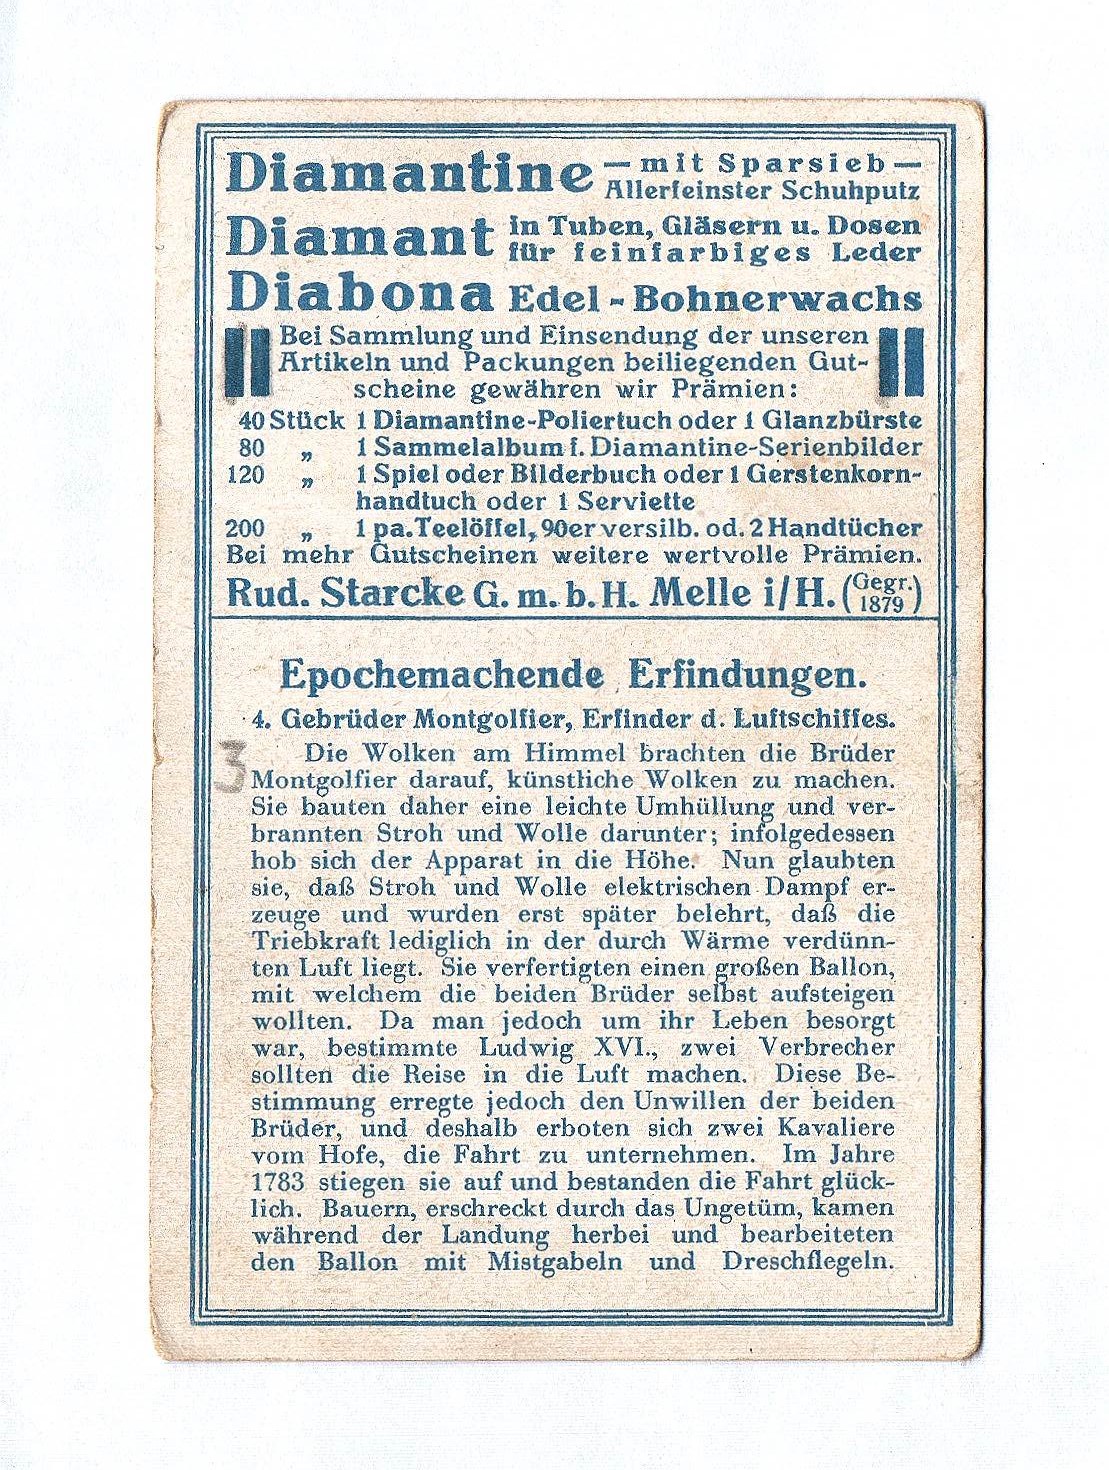 Diamantine Schuhputz Gebr. Montgolfier Erfinder des Luftschiffes Sammelbild Rud. Starcke G.m.b.H. Melle